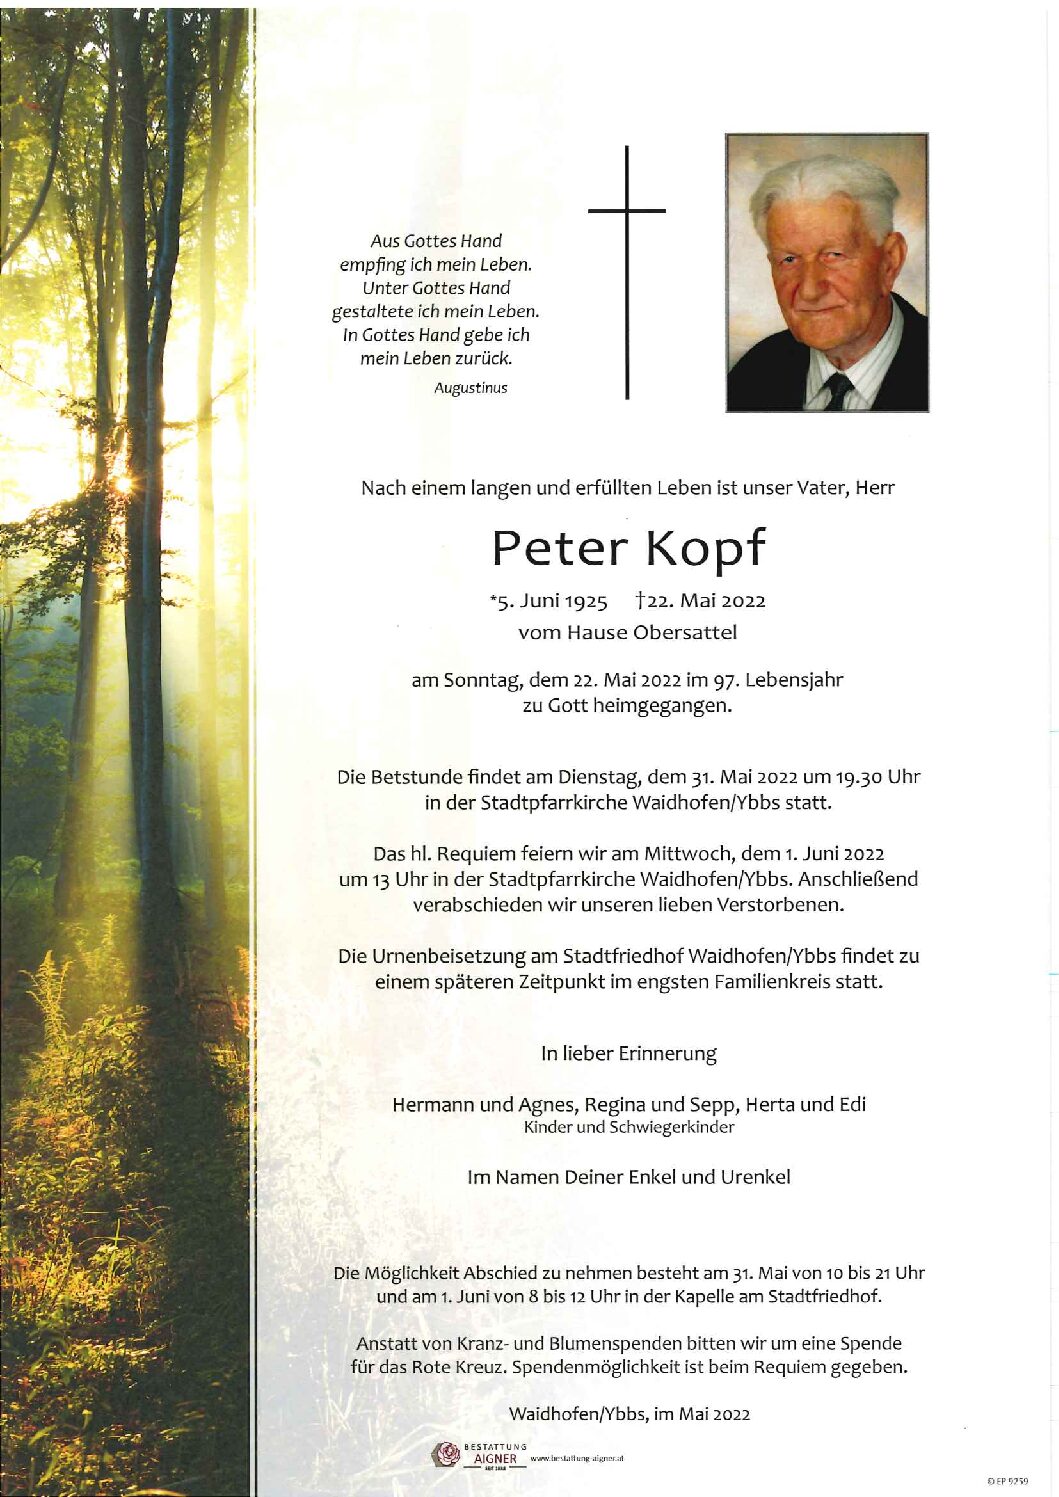 Peter Kopf